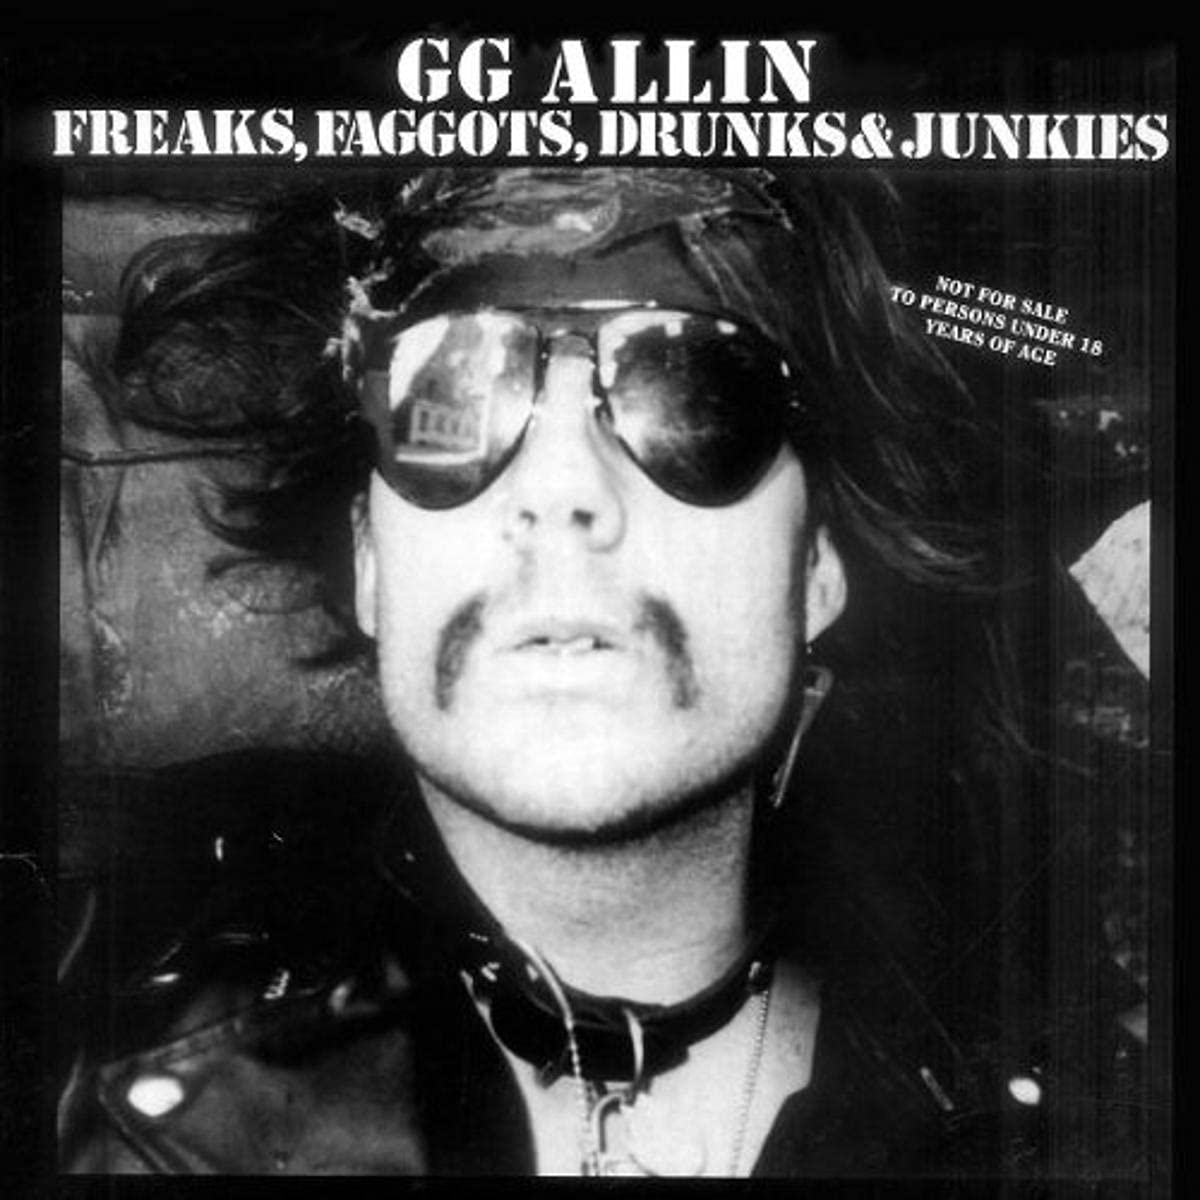 GG ALLIN: Freaks, Faggots, Drunks & Junkies LP